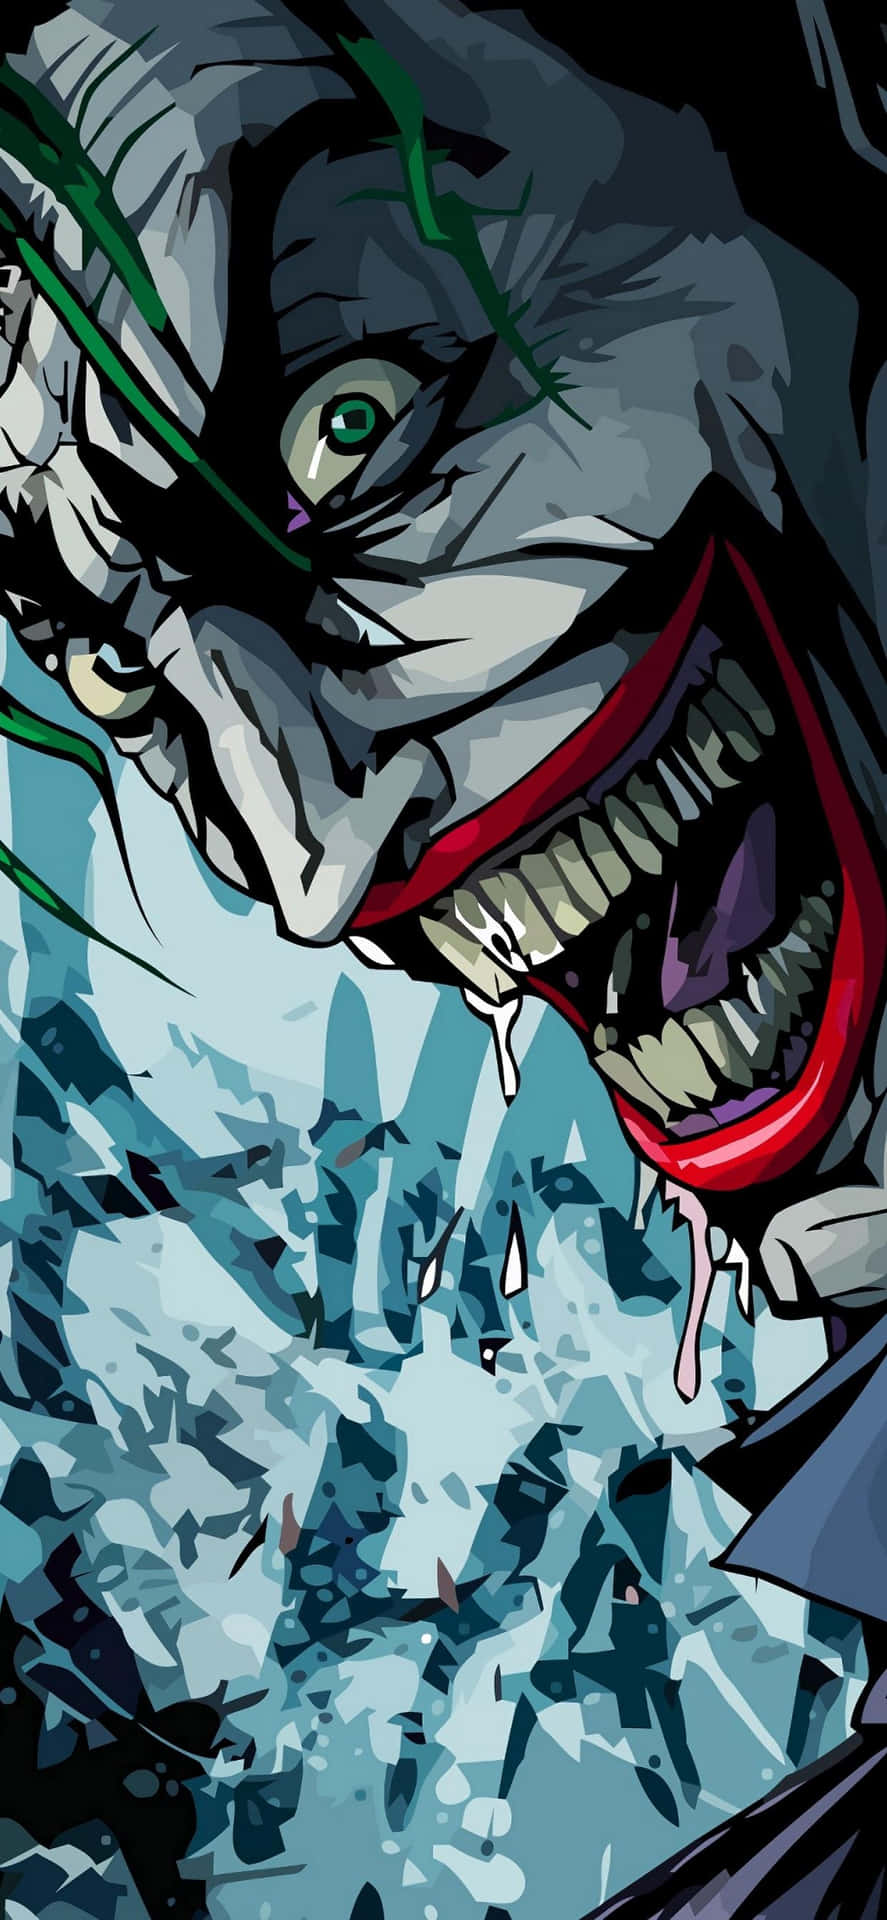 Joker Laughing Maniacally Wallpaper